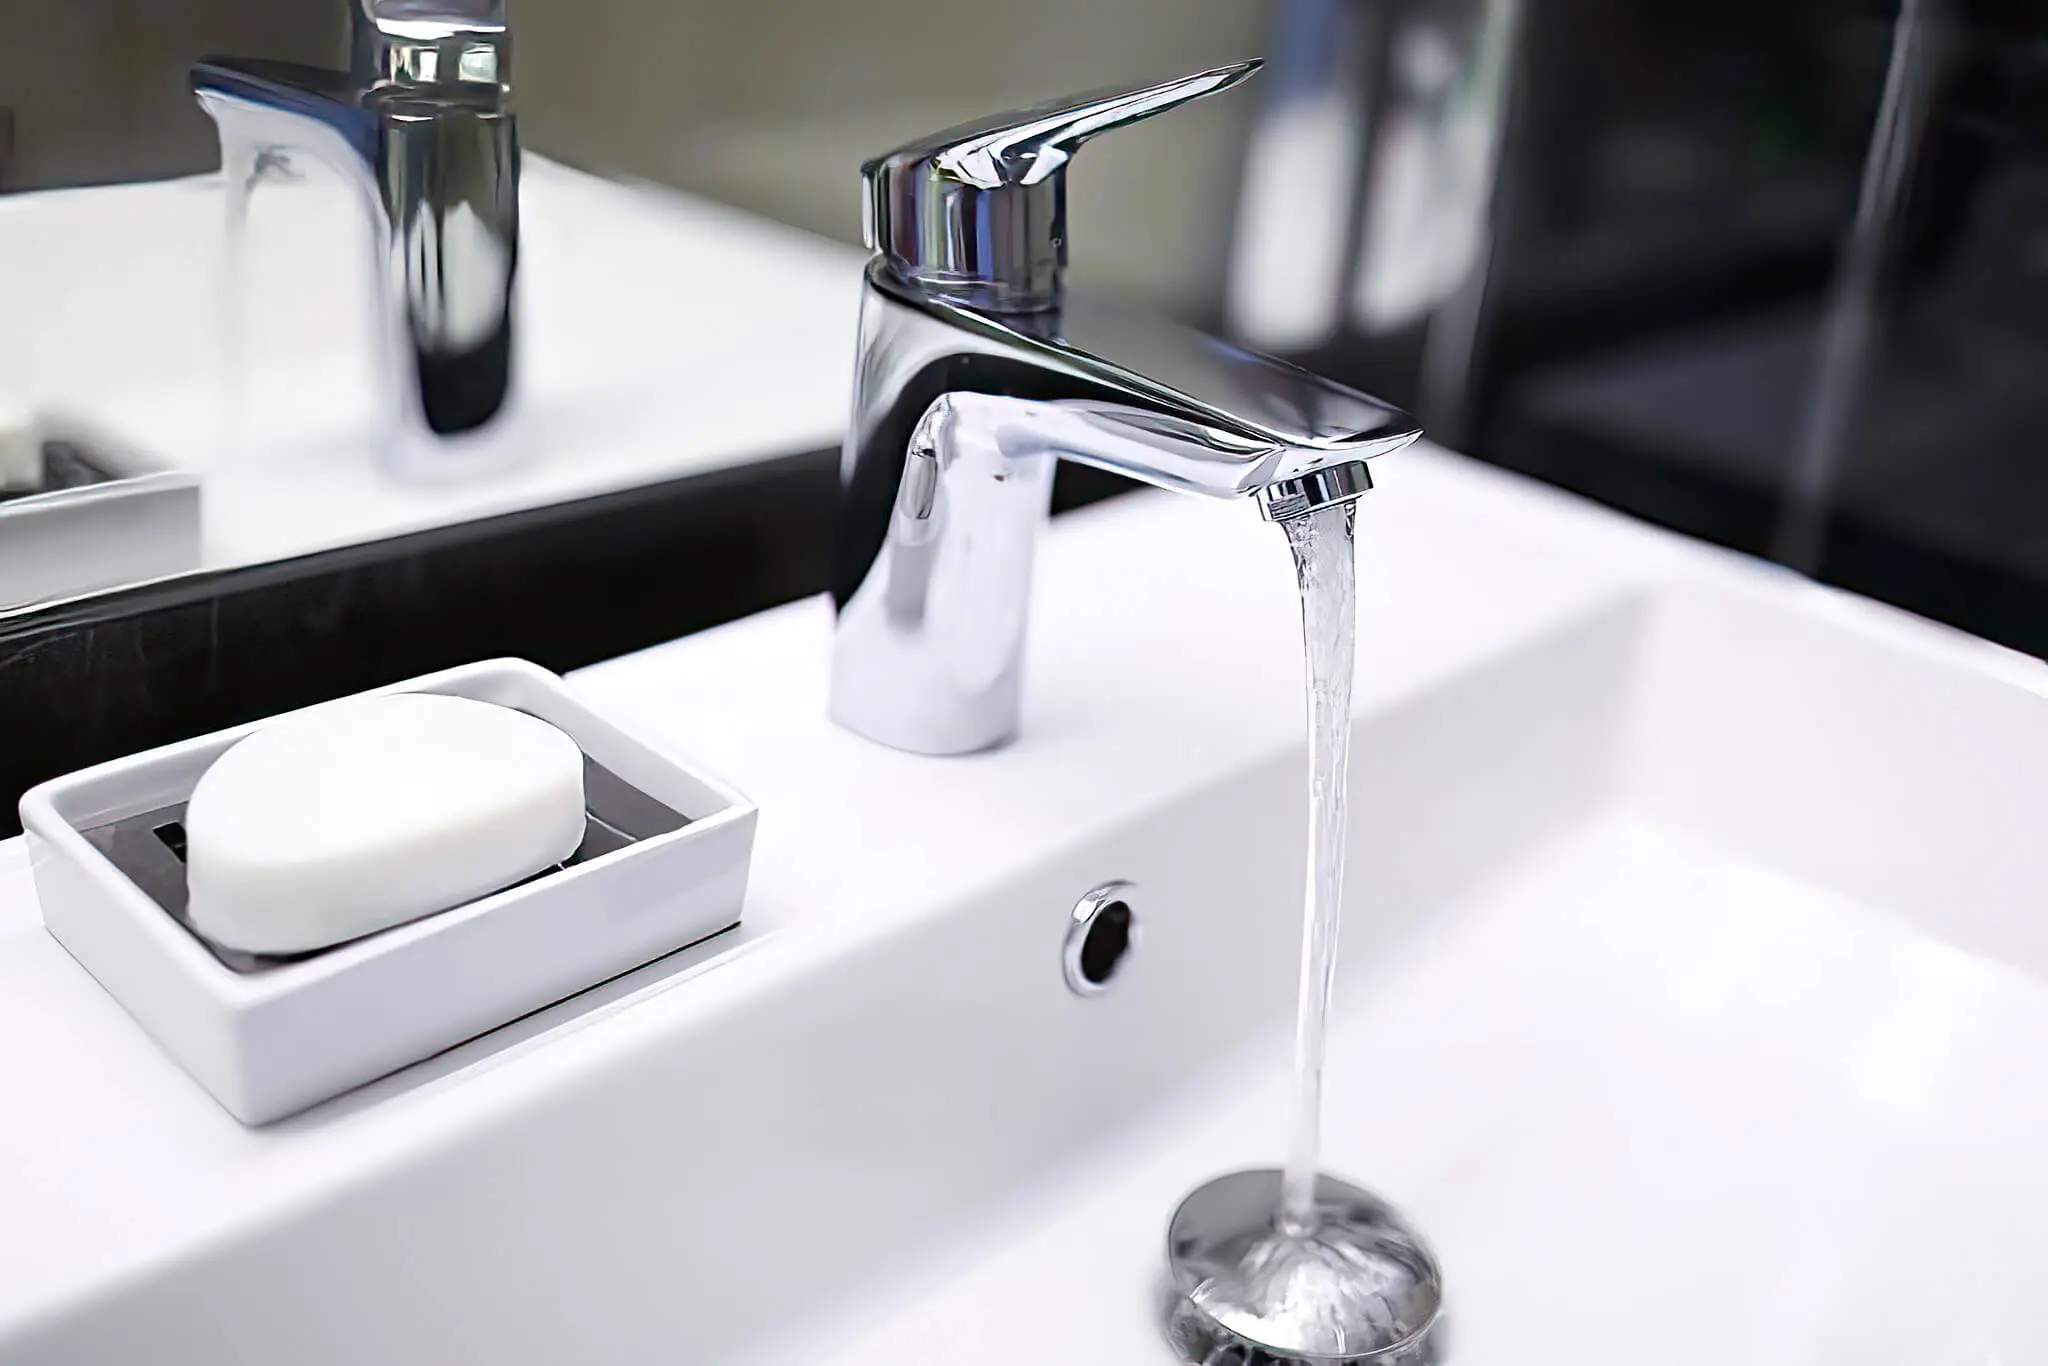 sudden low water pressure in kitchen sink